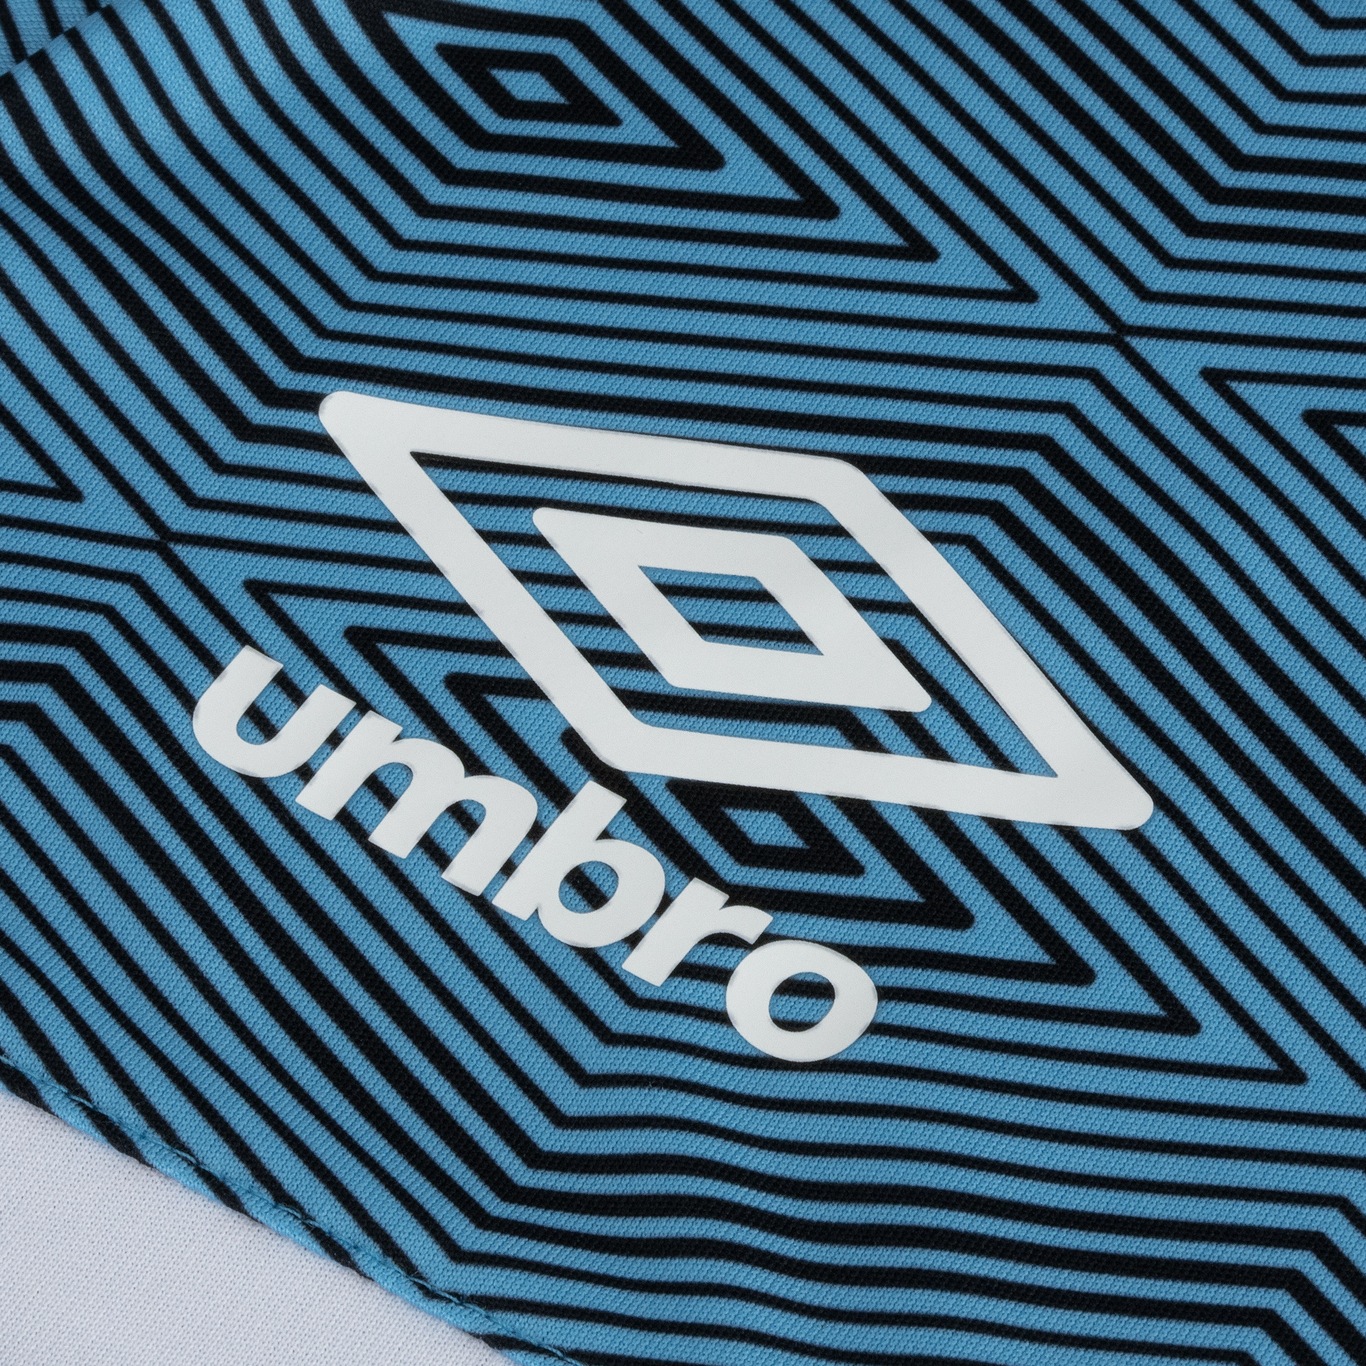 Camisa de Treino do Grêmio 21 Umbro - Masculina - Foto 4